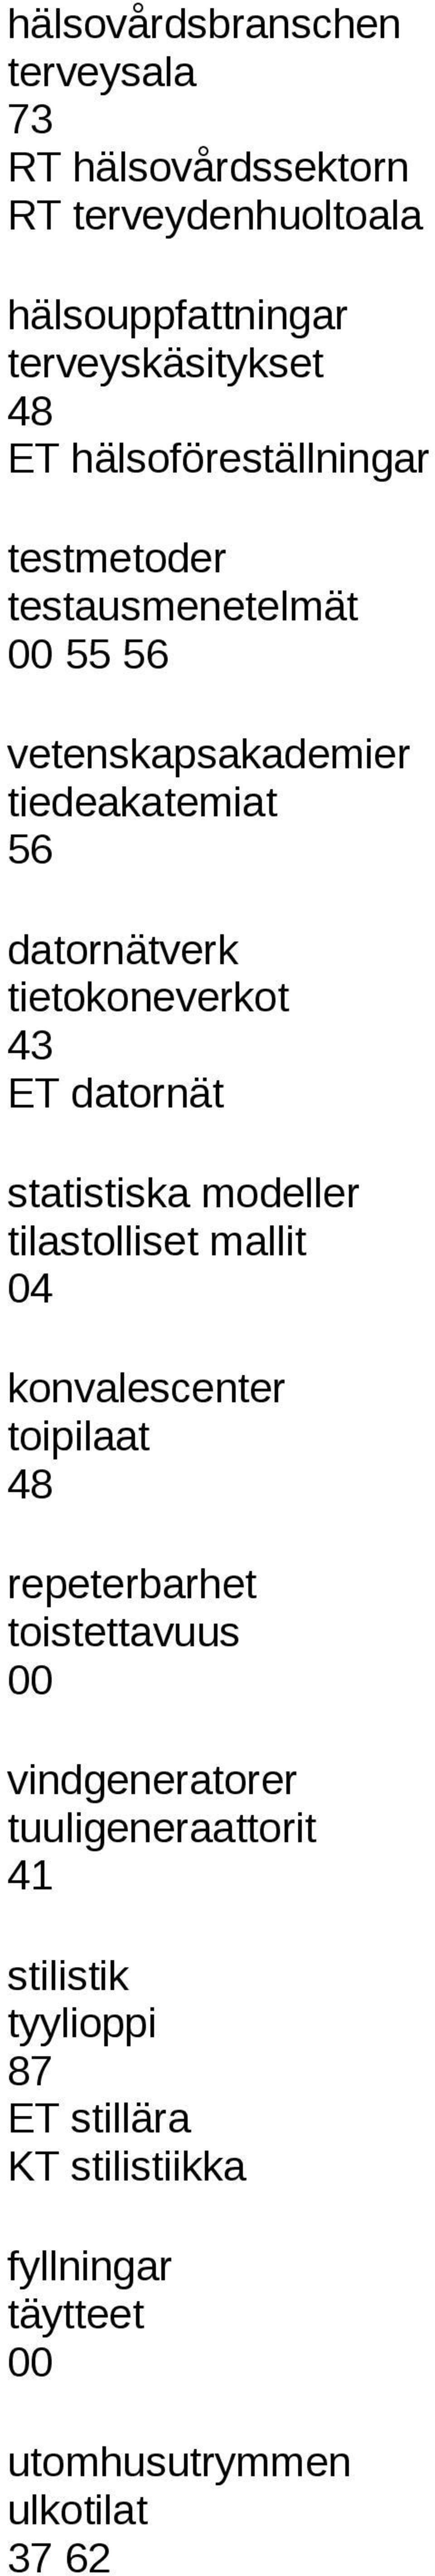 tietokoneverkot 43 ET datornät statistiska modeller tilastolliset mallit 04 konvalescenter toipilaat repeterbarhet